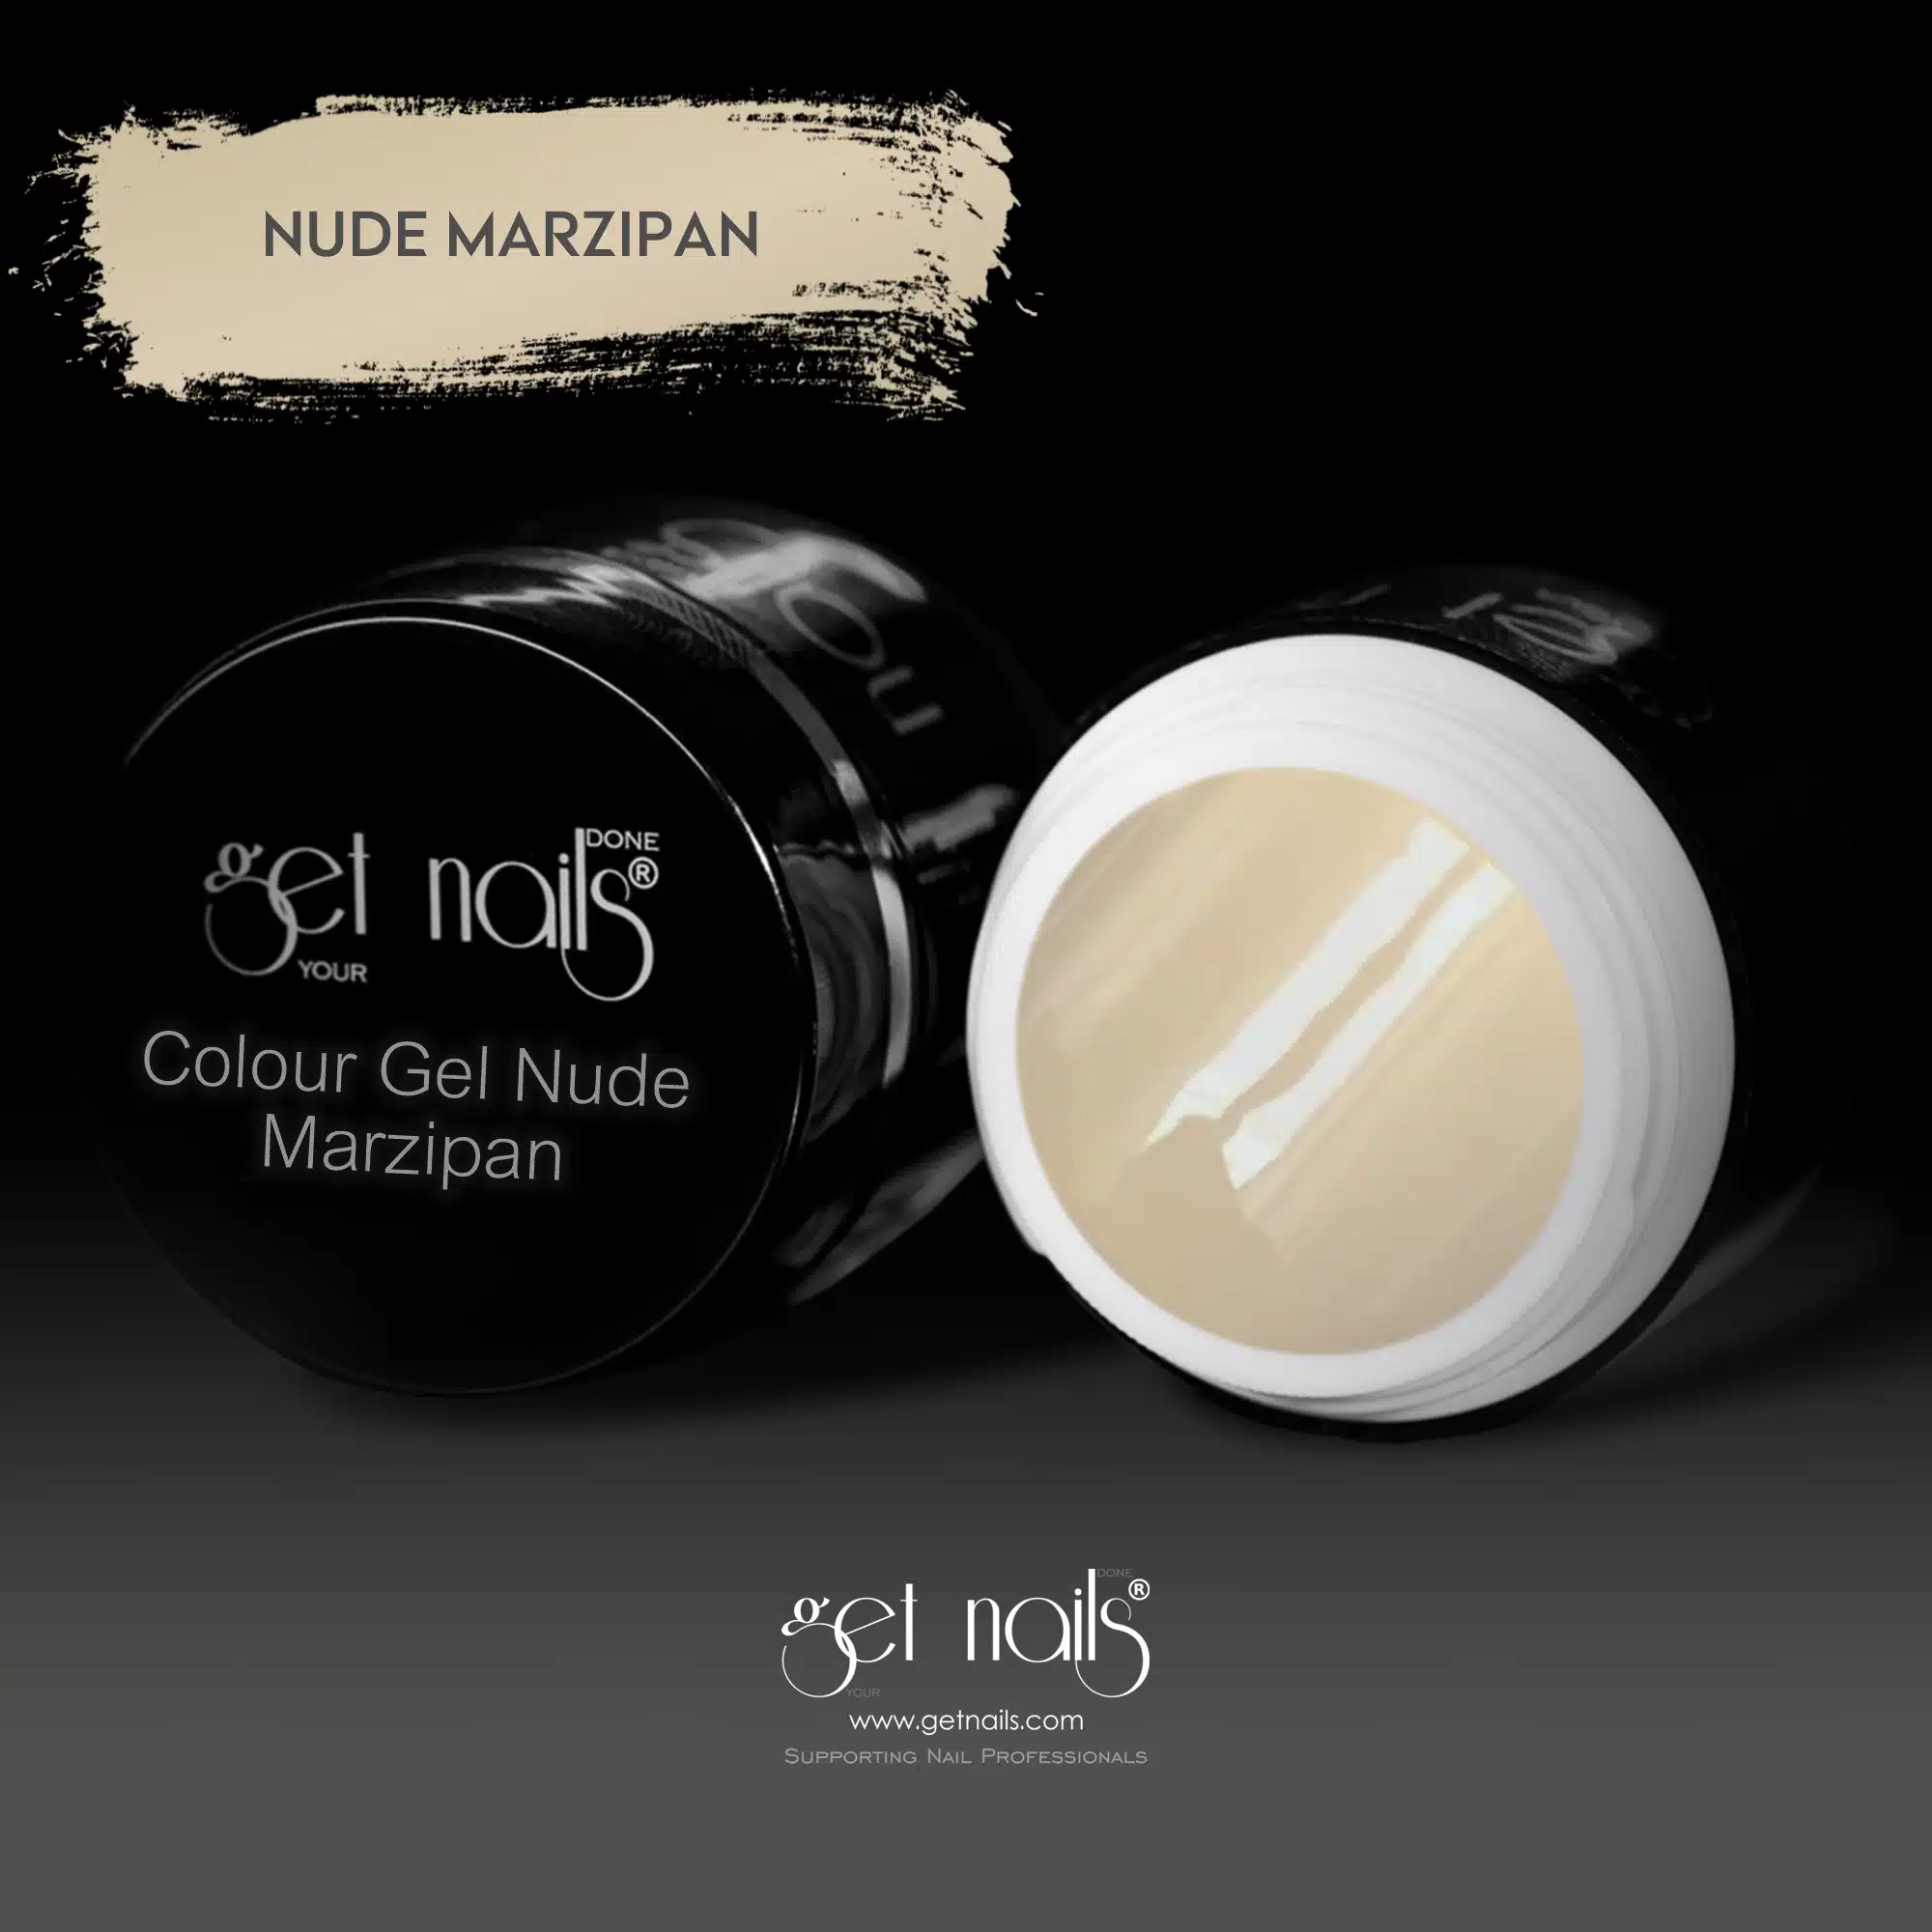 Get Nails Austria - Цветной гель Nude Marzipan 5g